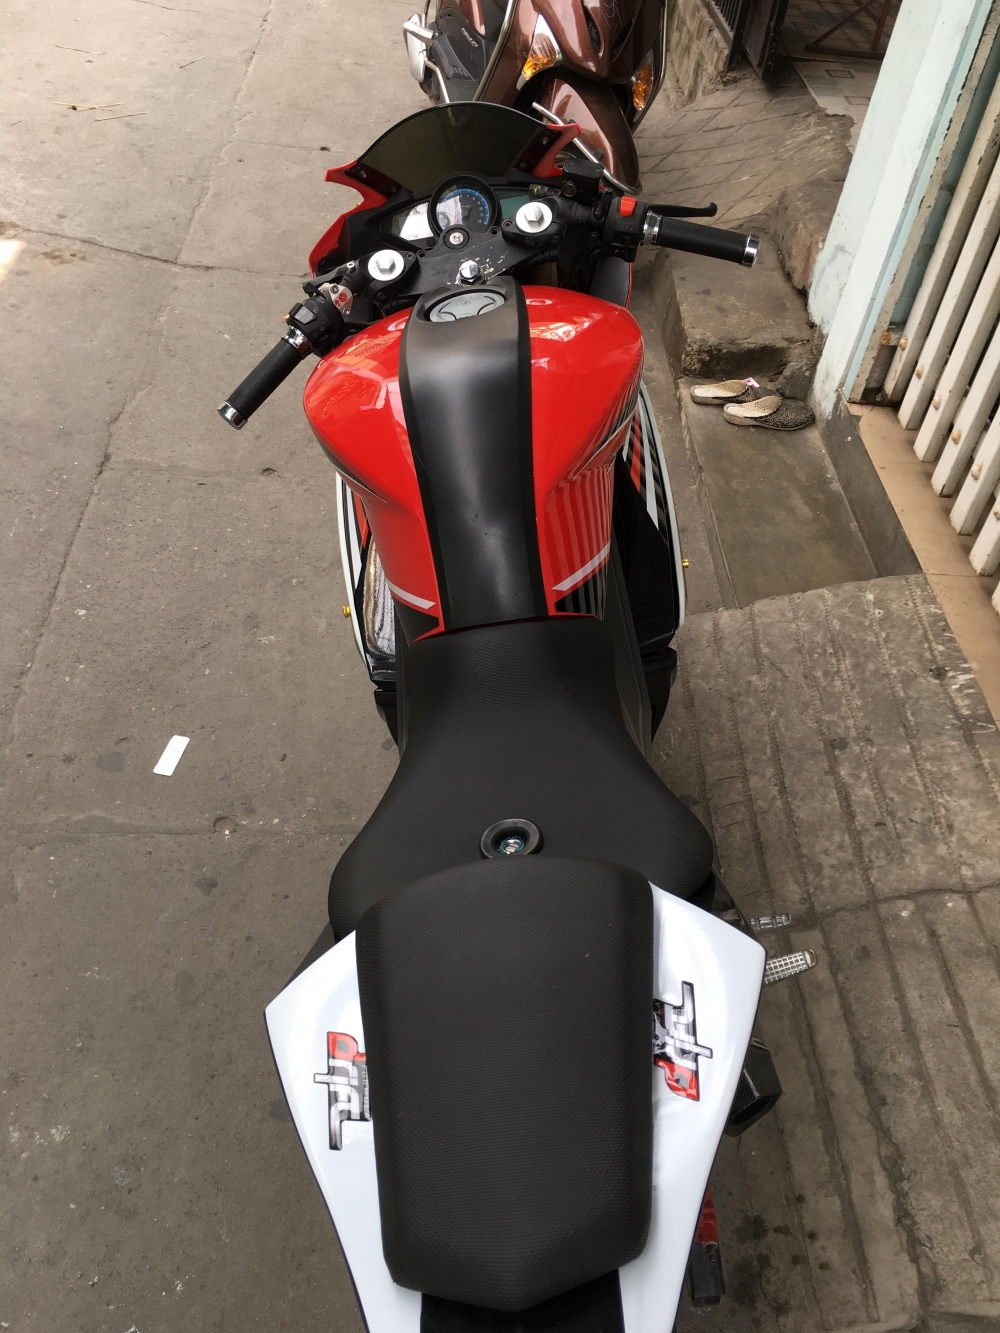 Moto Phoenix r300cc màu đỏ đen2018 Xe mới 100 ở TPHCM giá 58tr MSP  676178